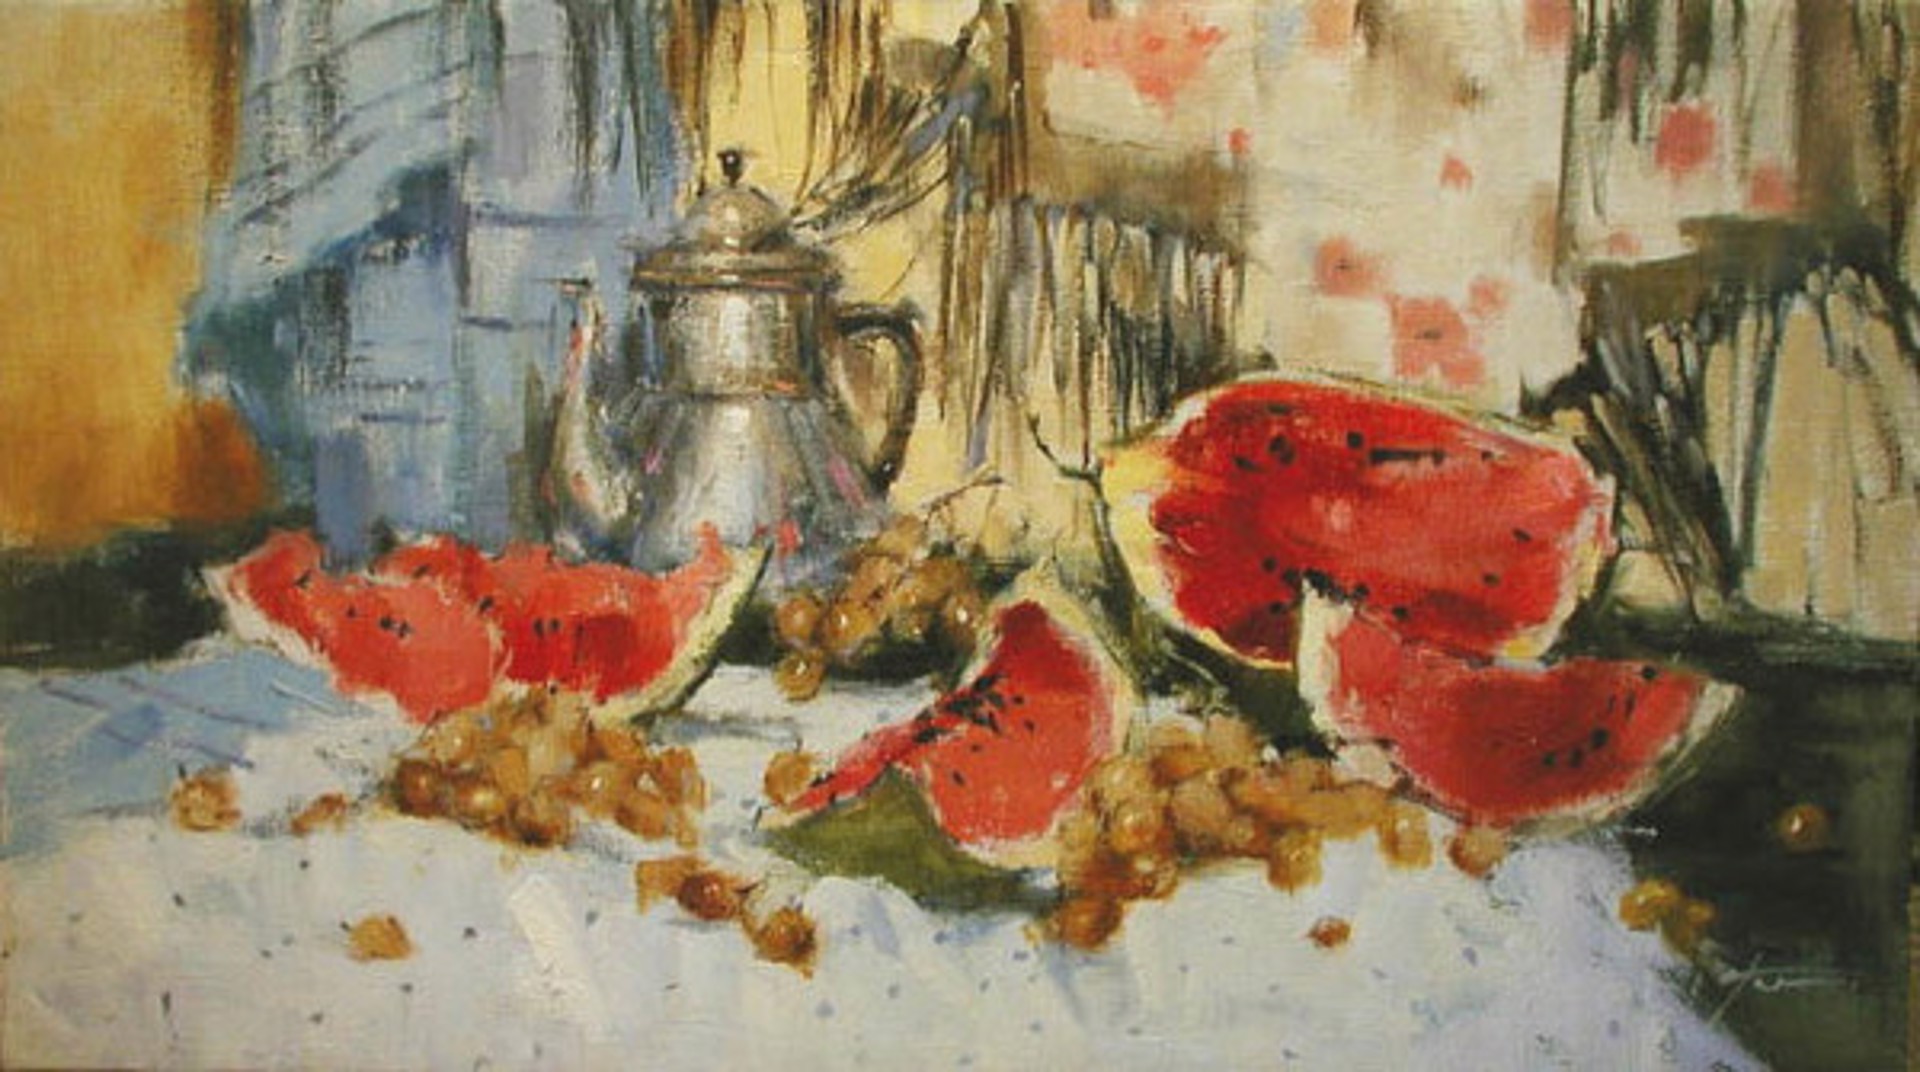 Watermelon and Grapes by Yana Golubyatnikova